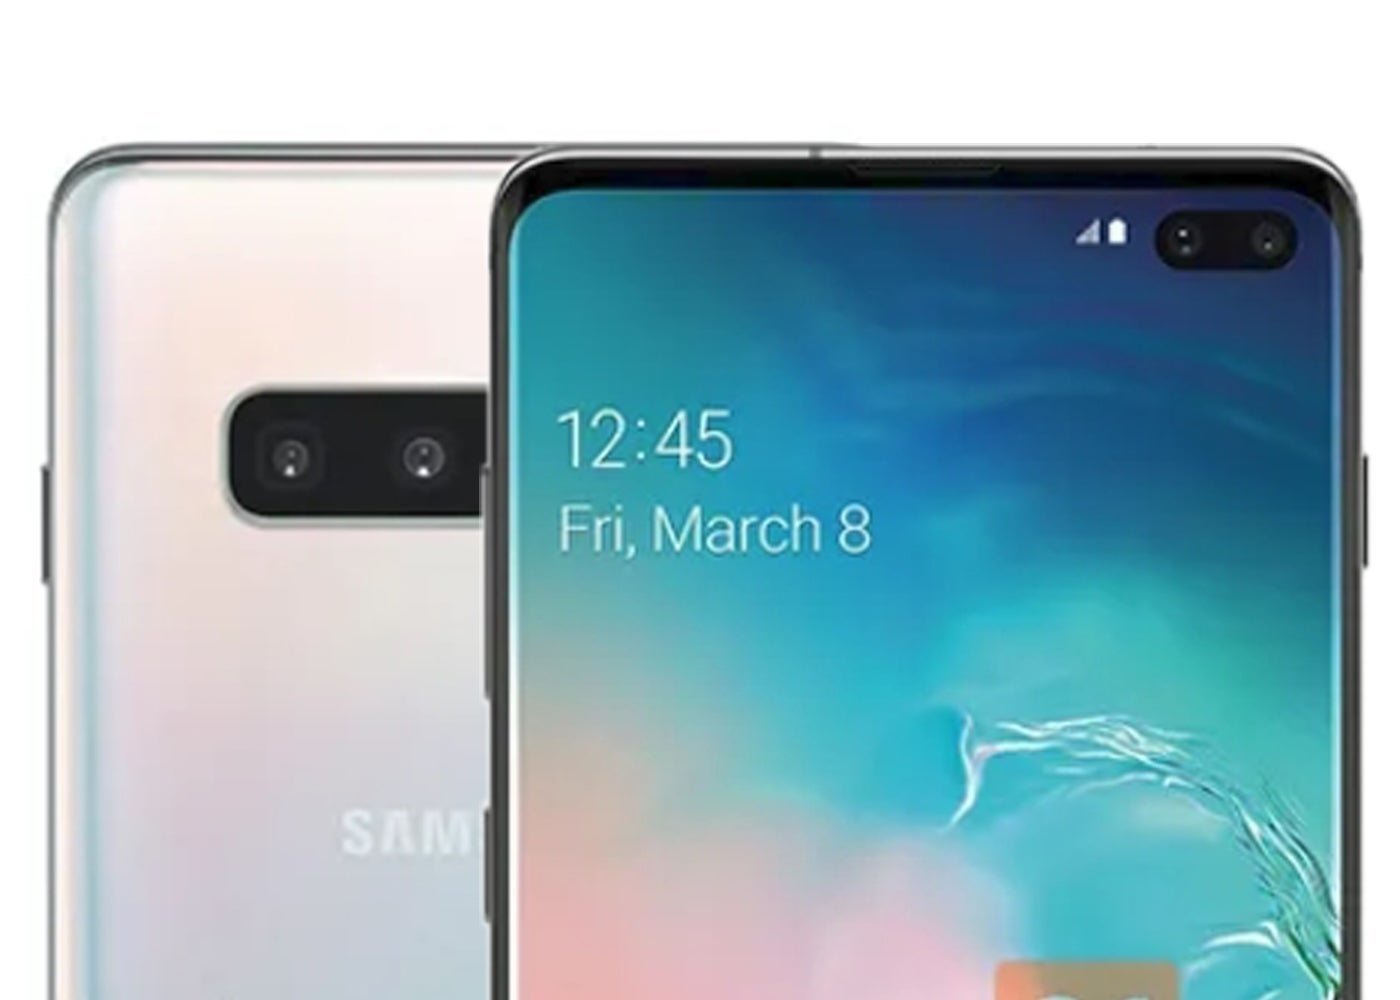 Filtran todas las características técnicas del nuevo teléfono inteligente Samsung Galaxy S10+